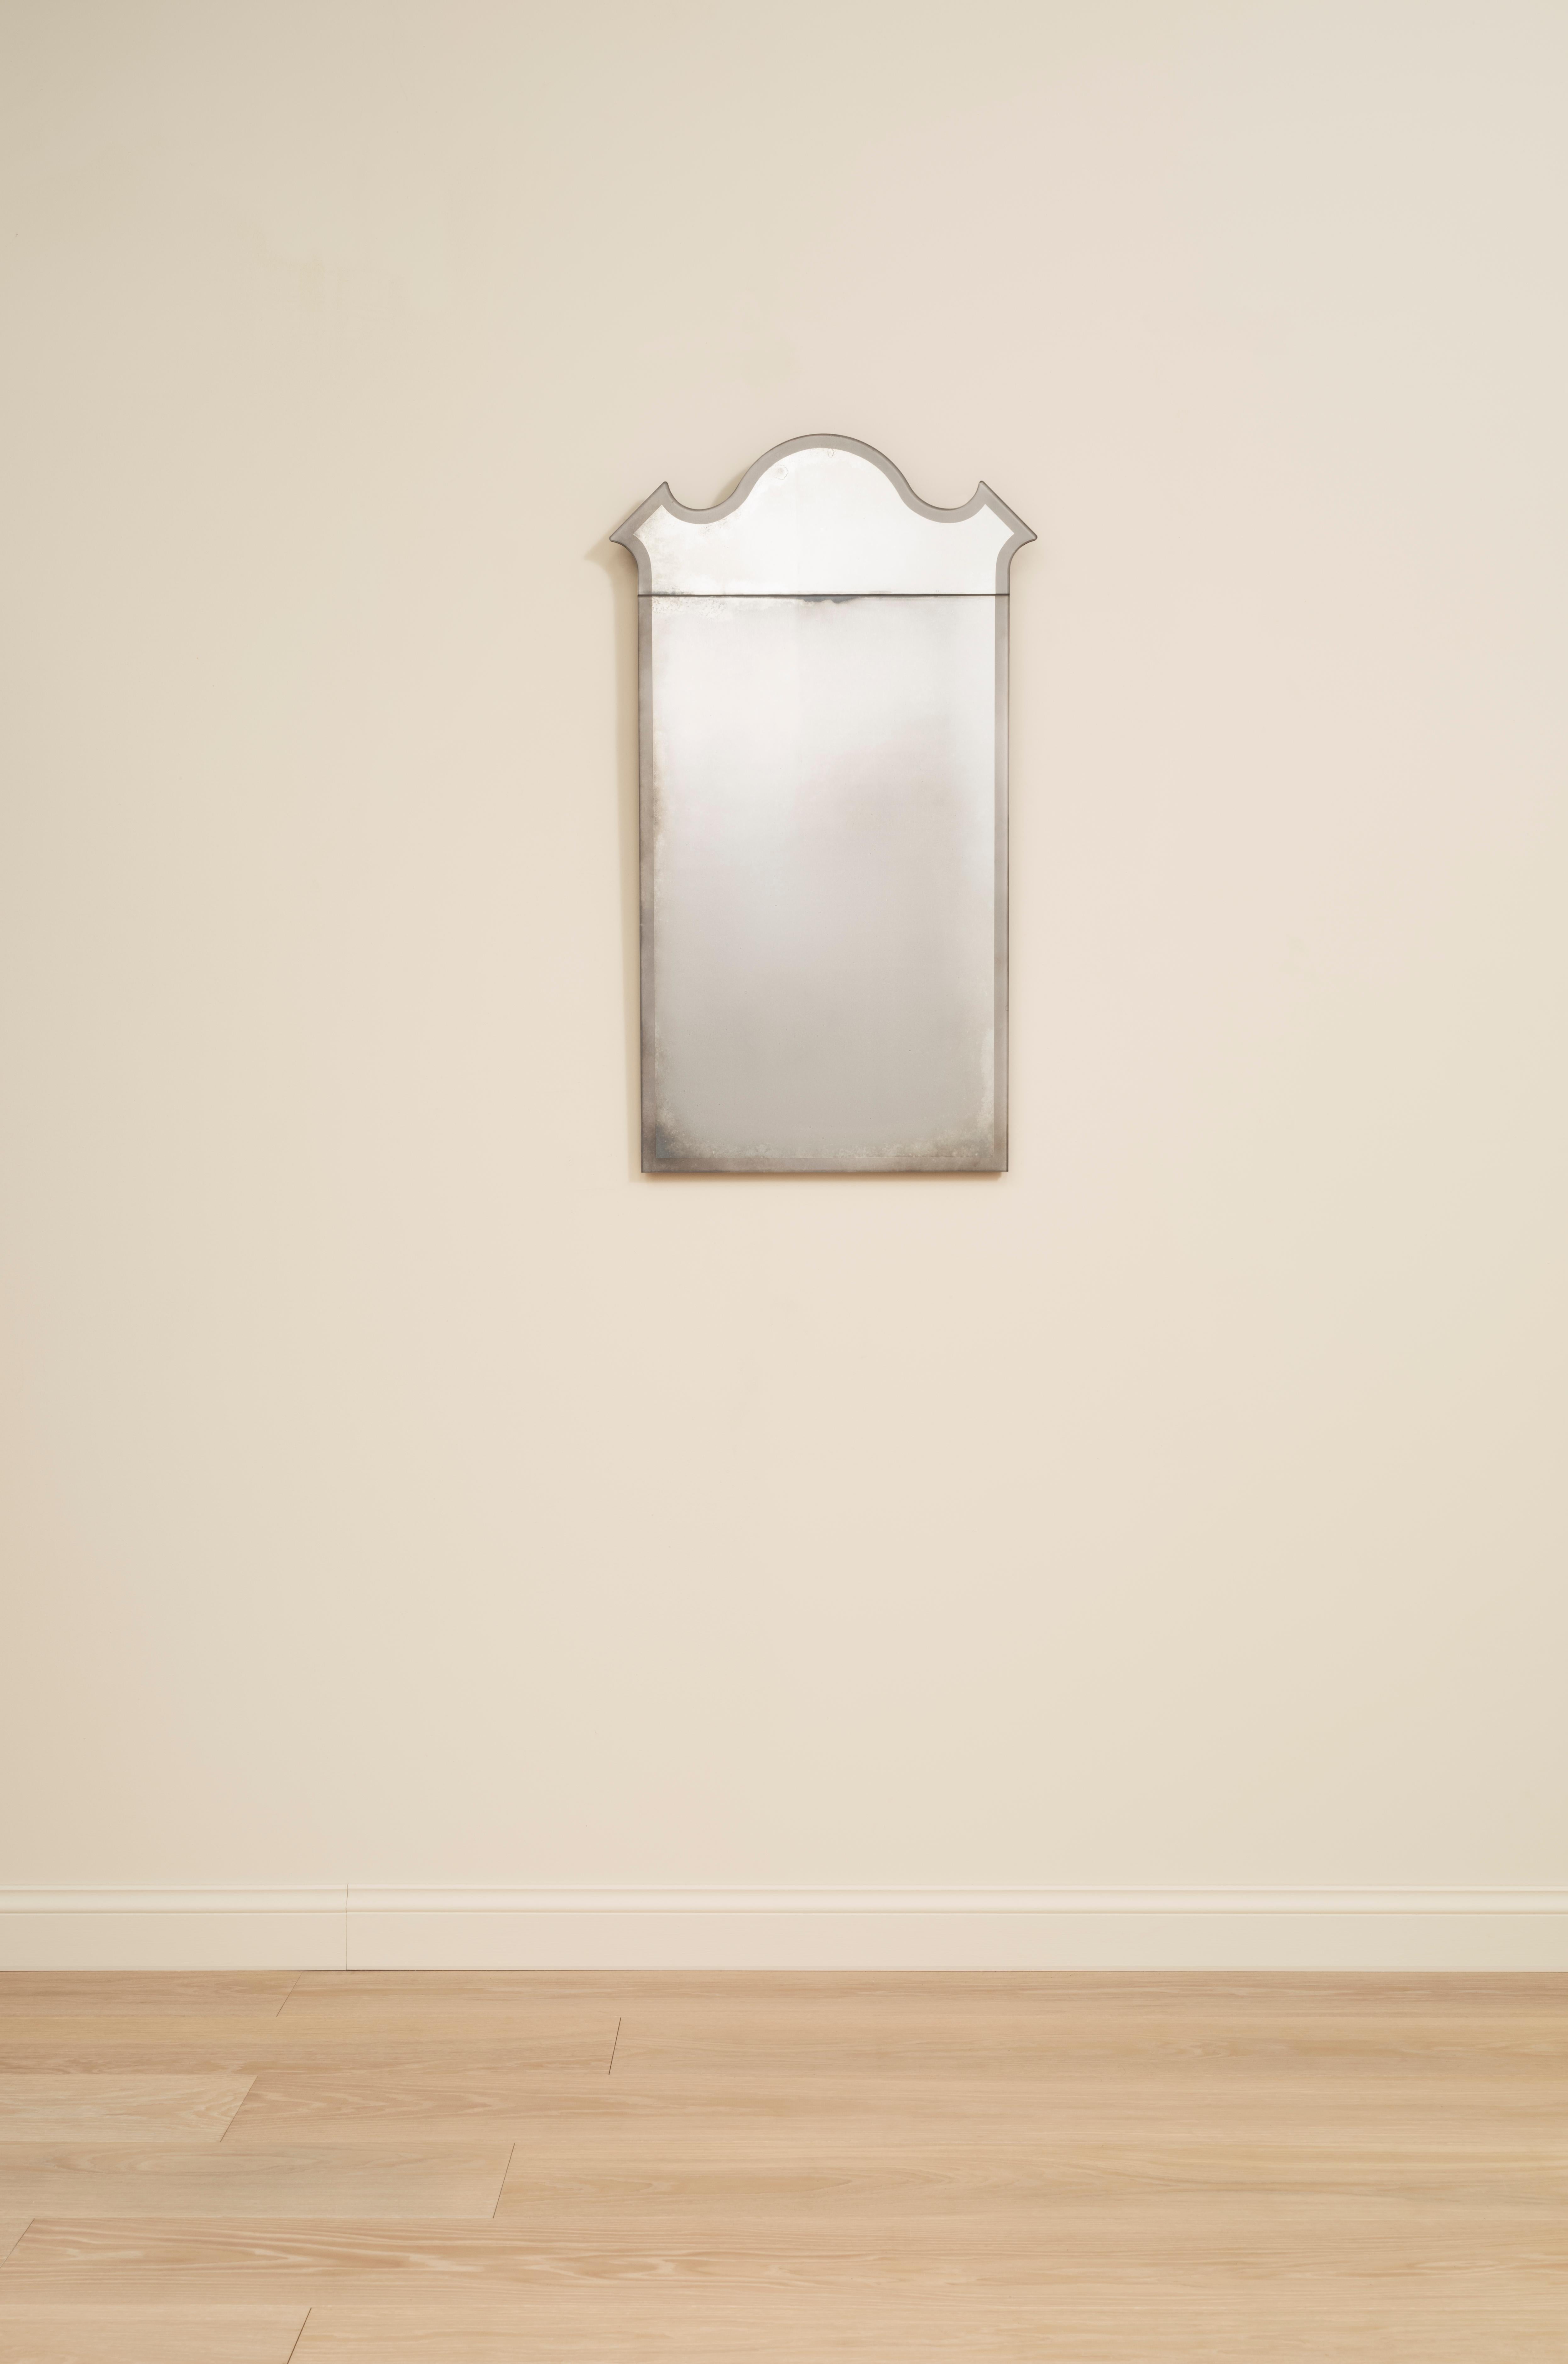 Inspiriert von den traditionellen Pfeilerspiegeln der viktorianischen Ära hat Rupert Bevan eine Kollektion von königlich geformten Spiegeln entwickelt, die in aufwändiger Handarbeit mit einem sandgestrahlten Rand versehen wurden und in 4 Designs